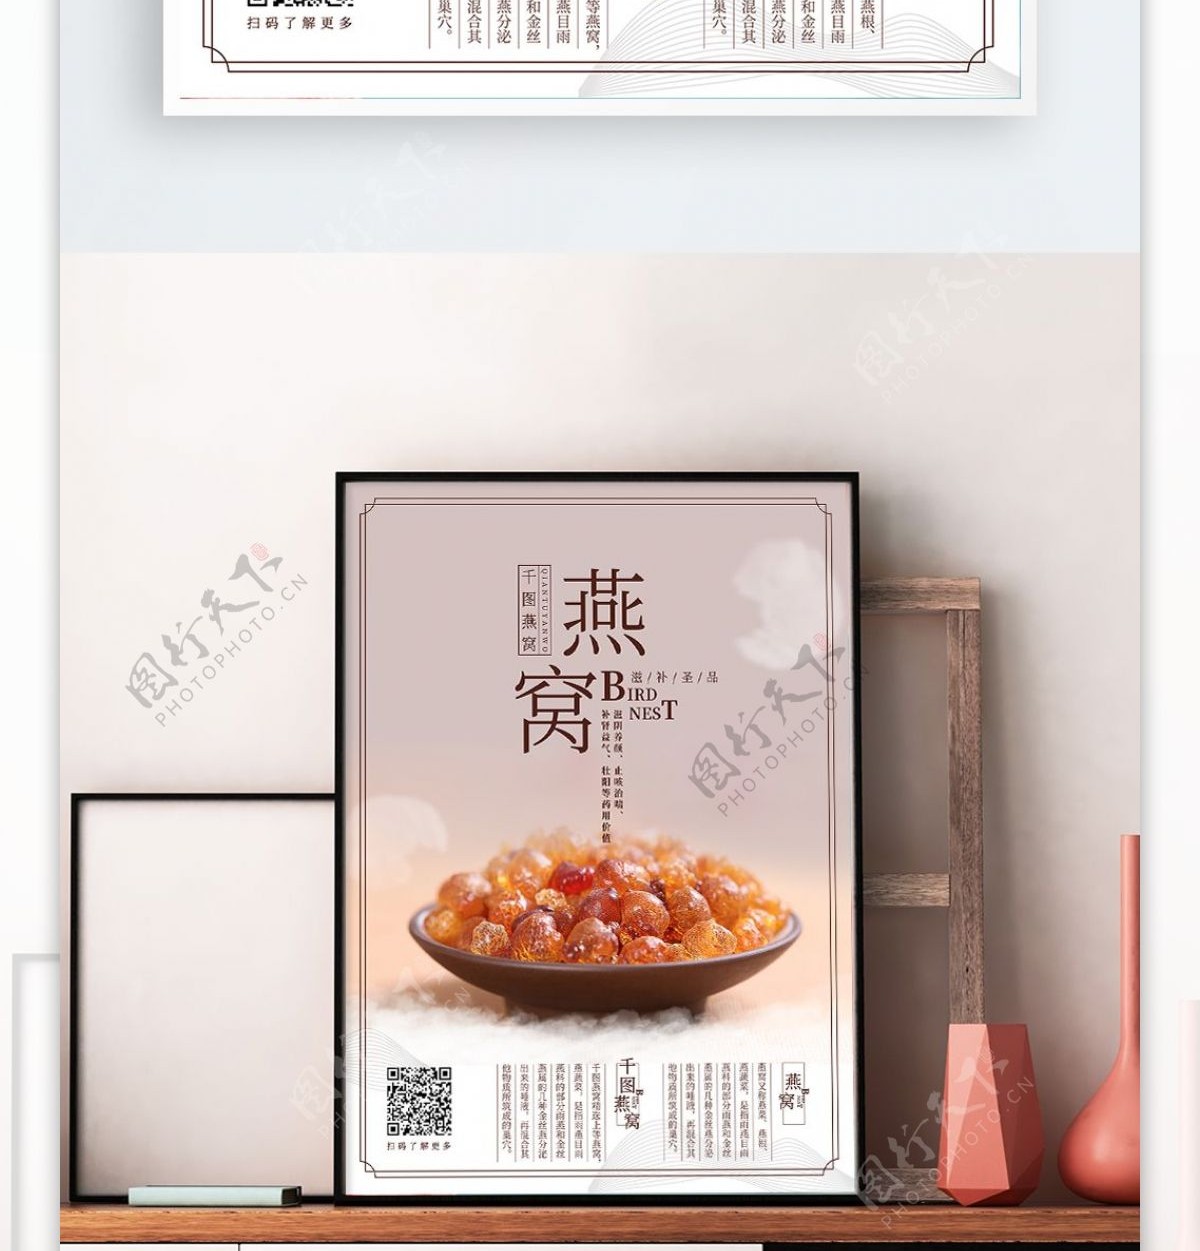 中国风燕窝美食海报设计